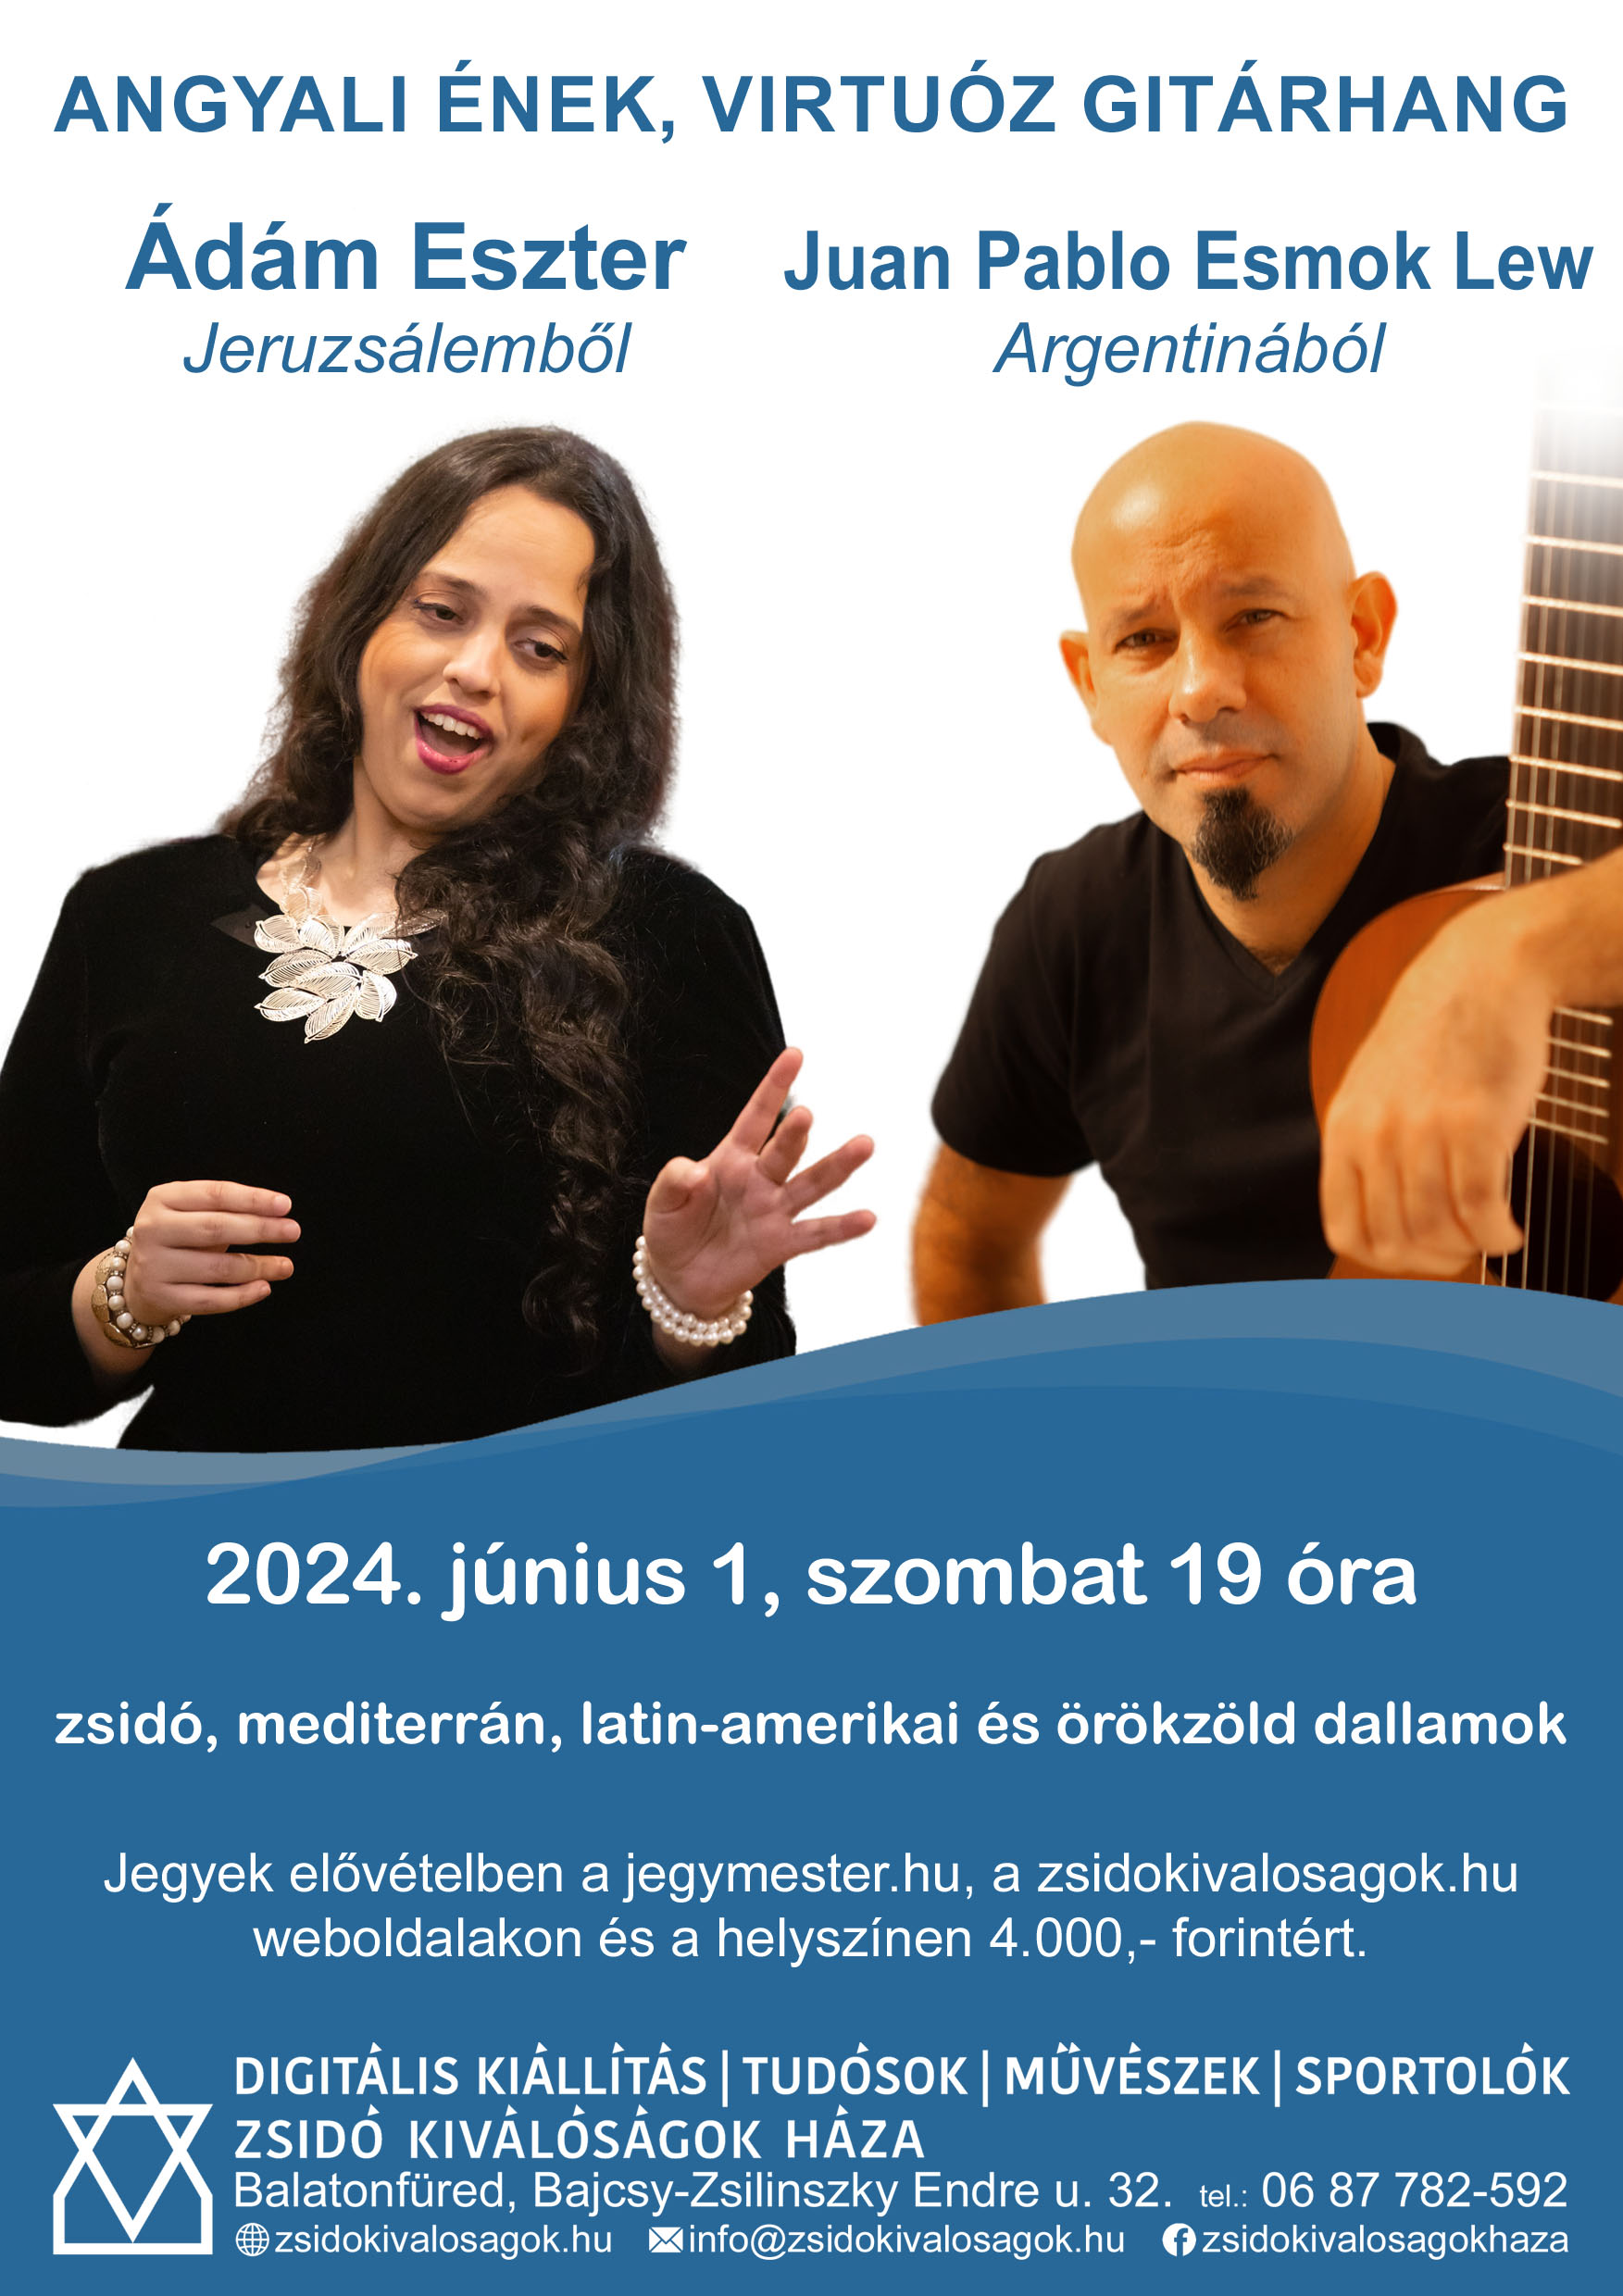 Zskh Angyali ének, Virtuóz Gitárhang 2024.06.01